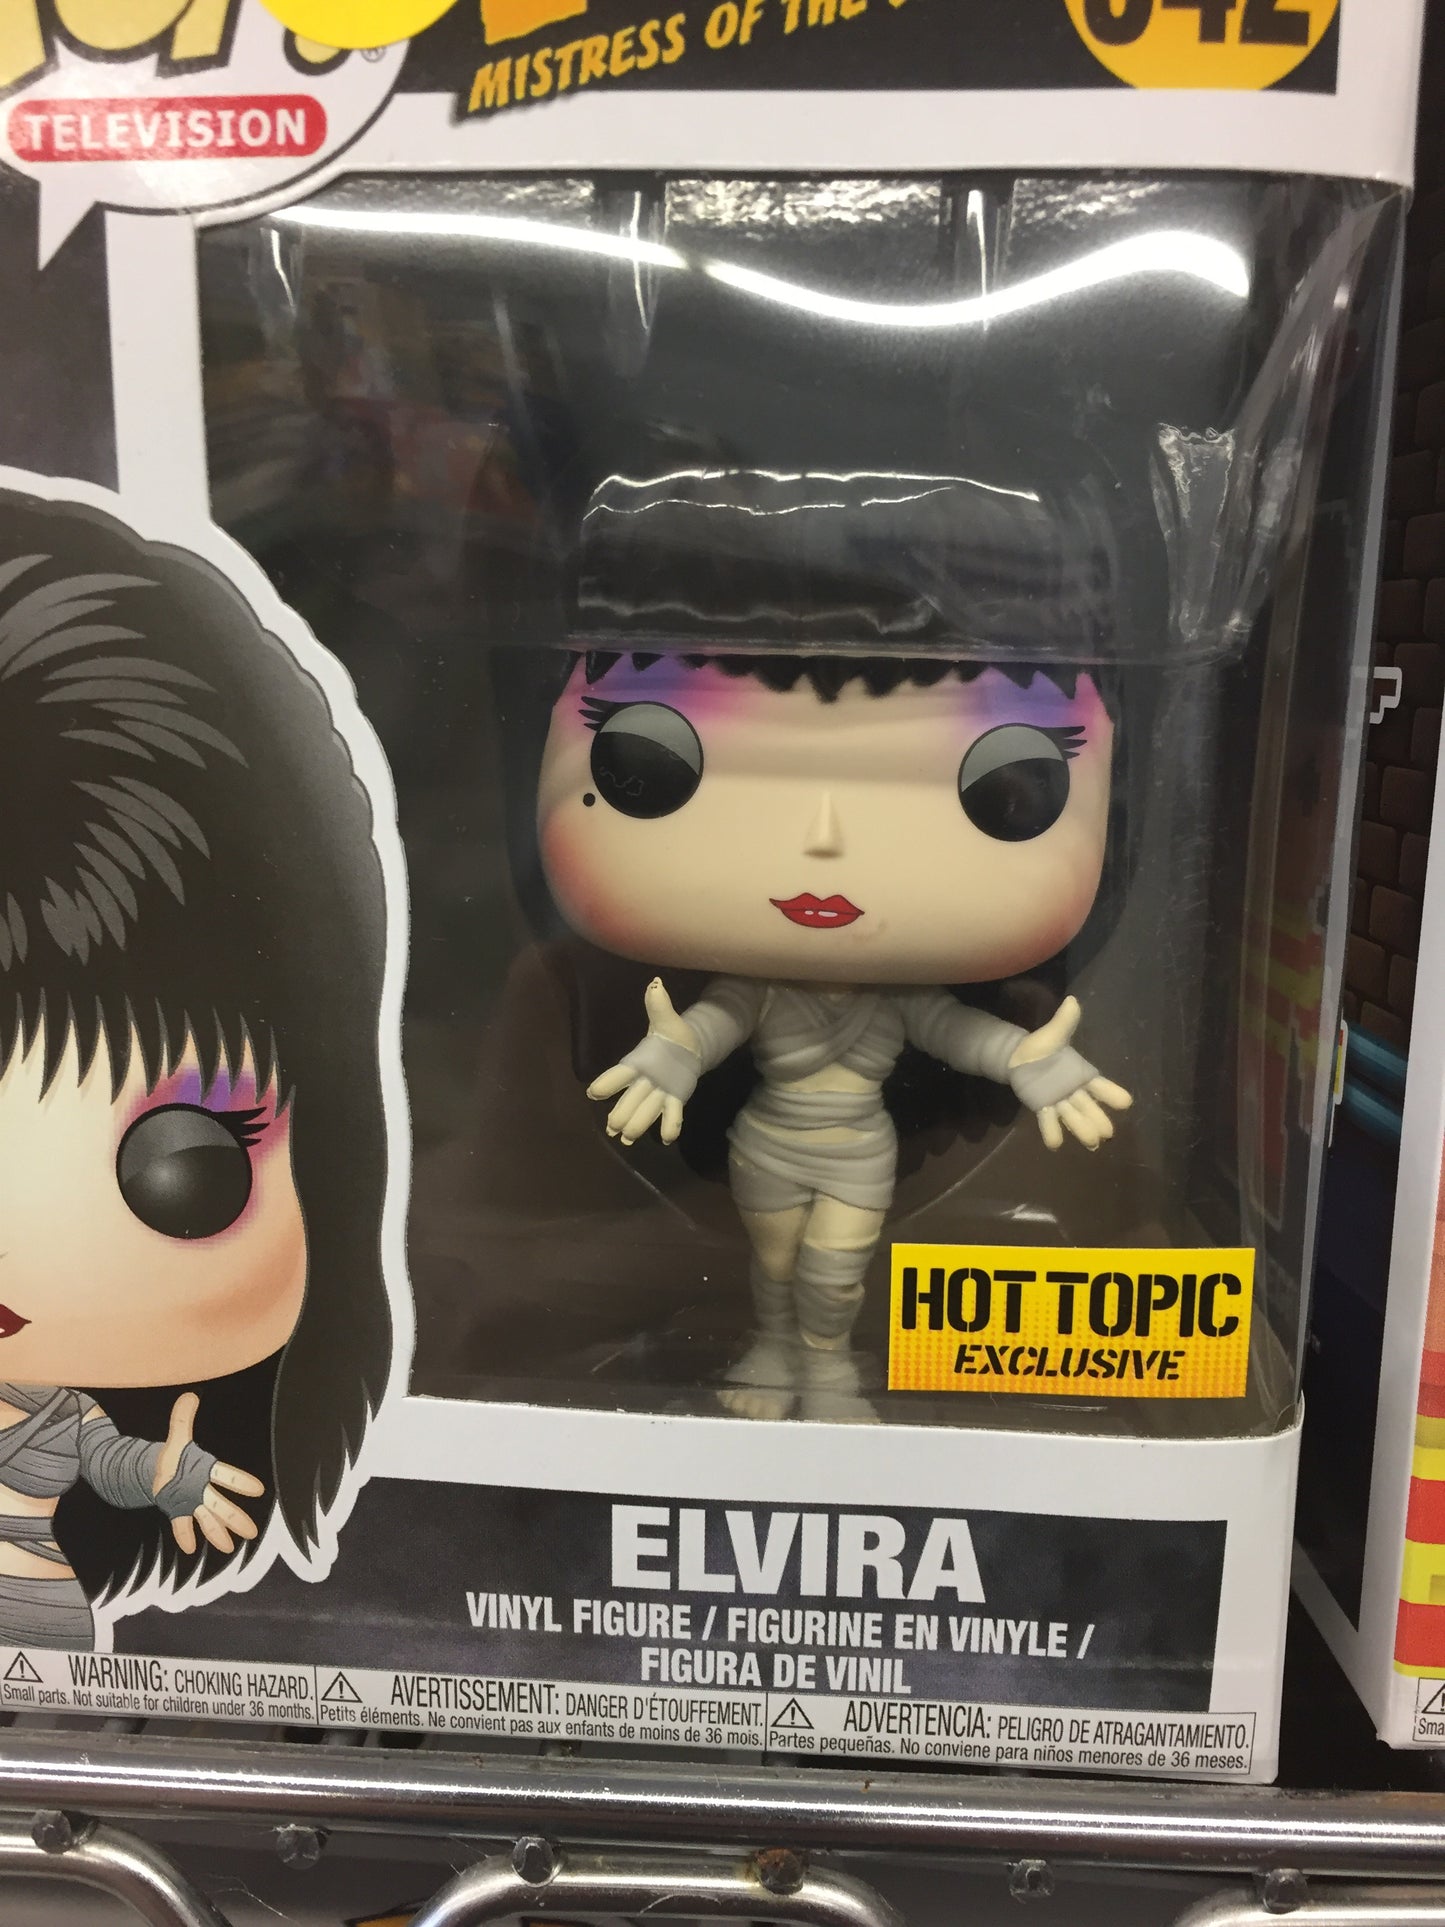 Elvira hot topic exclusive Funko Pop! Vinyl Figure